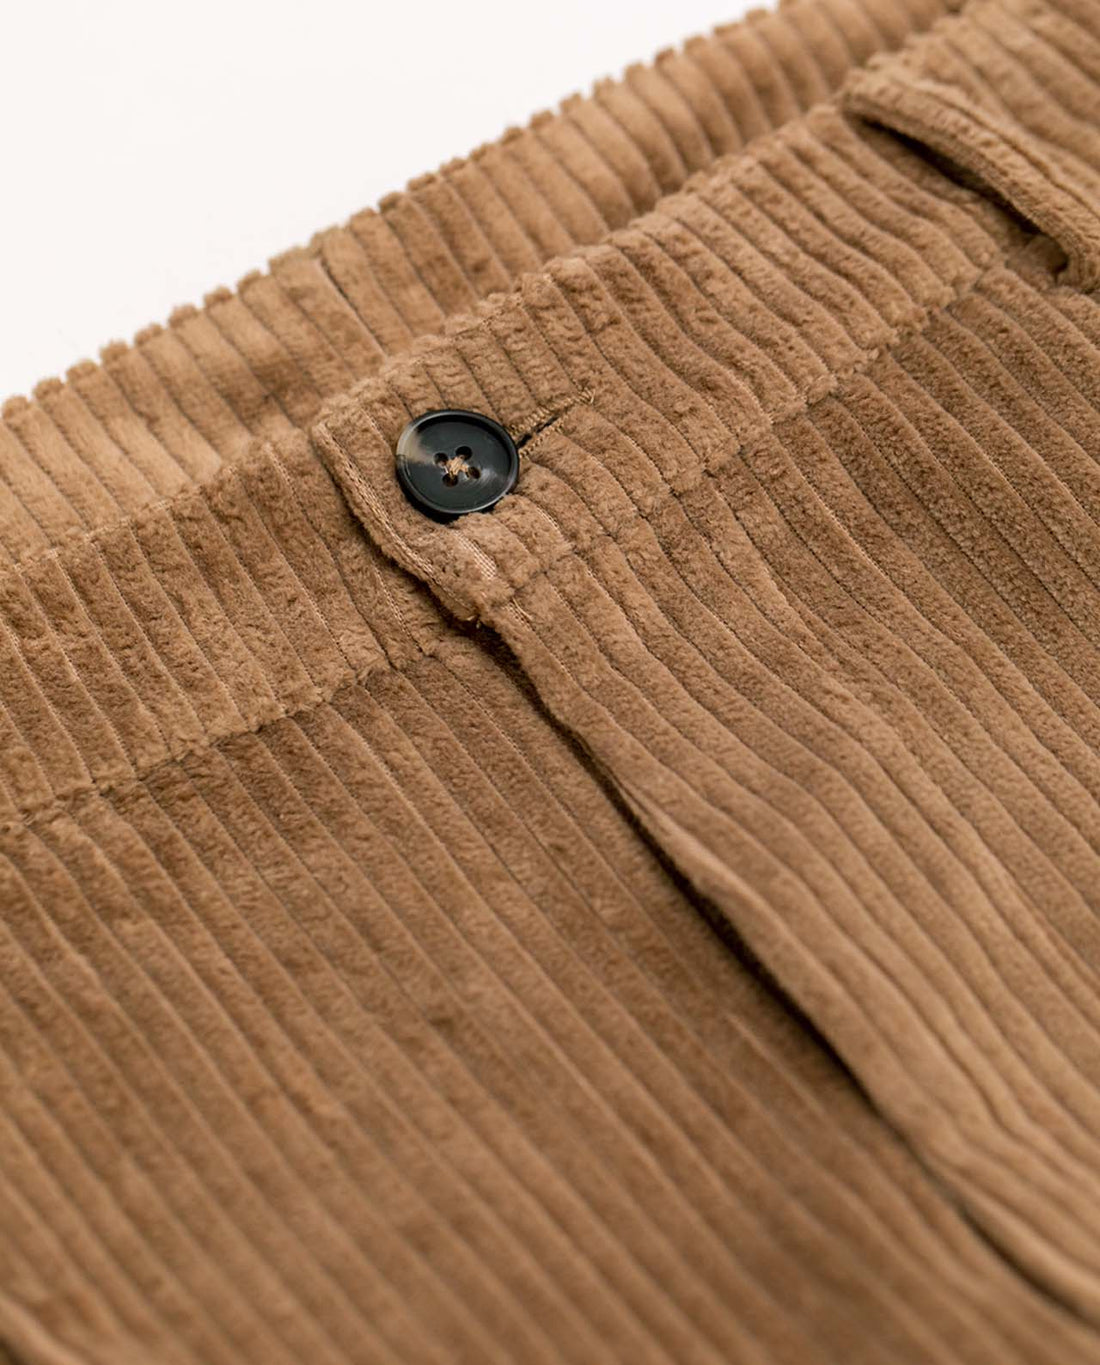 marché commun rotholz pantalon velours côtelé coton biologique homme éthique beige